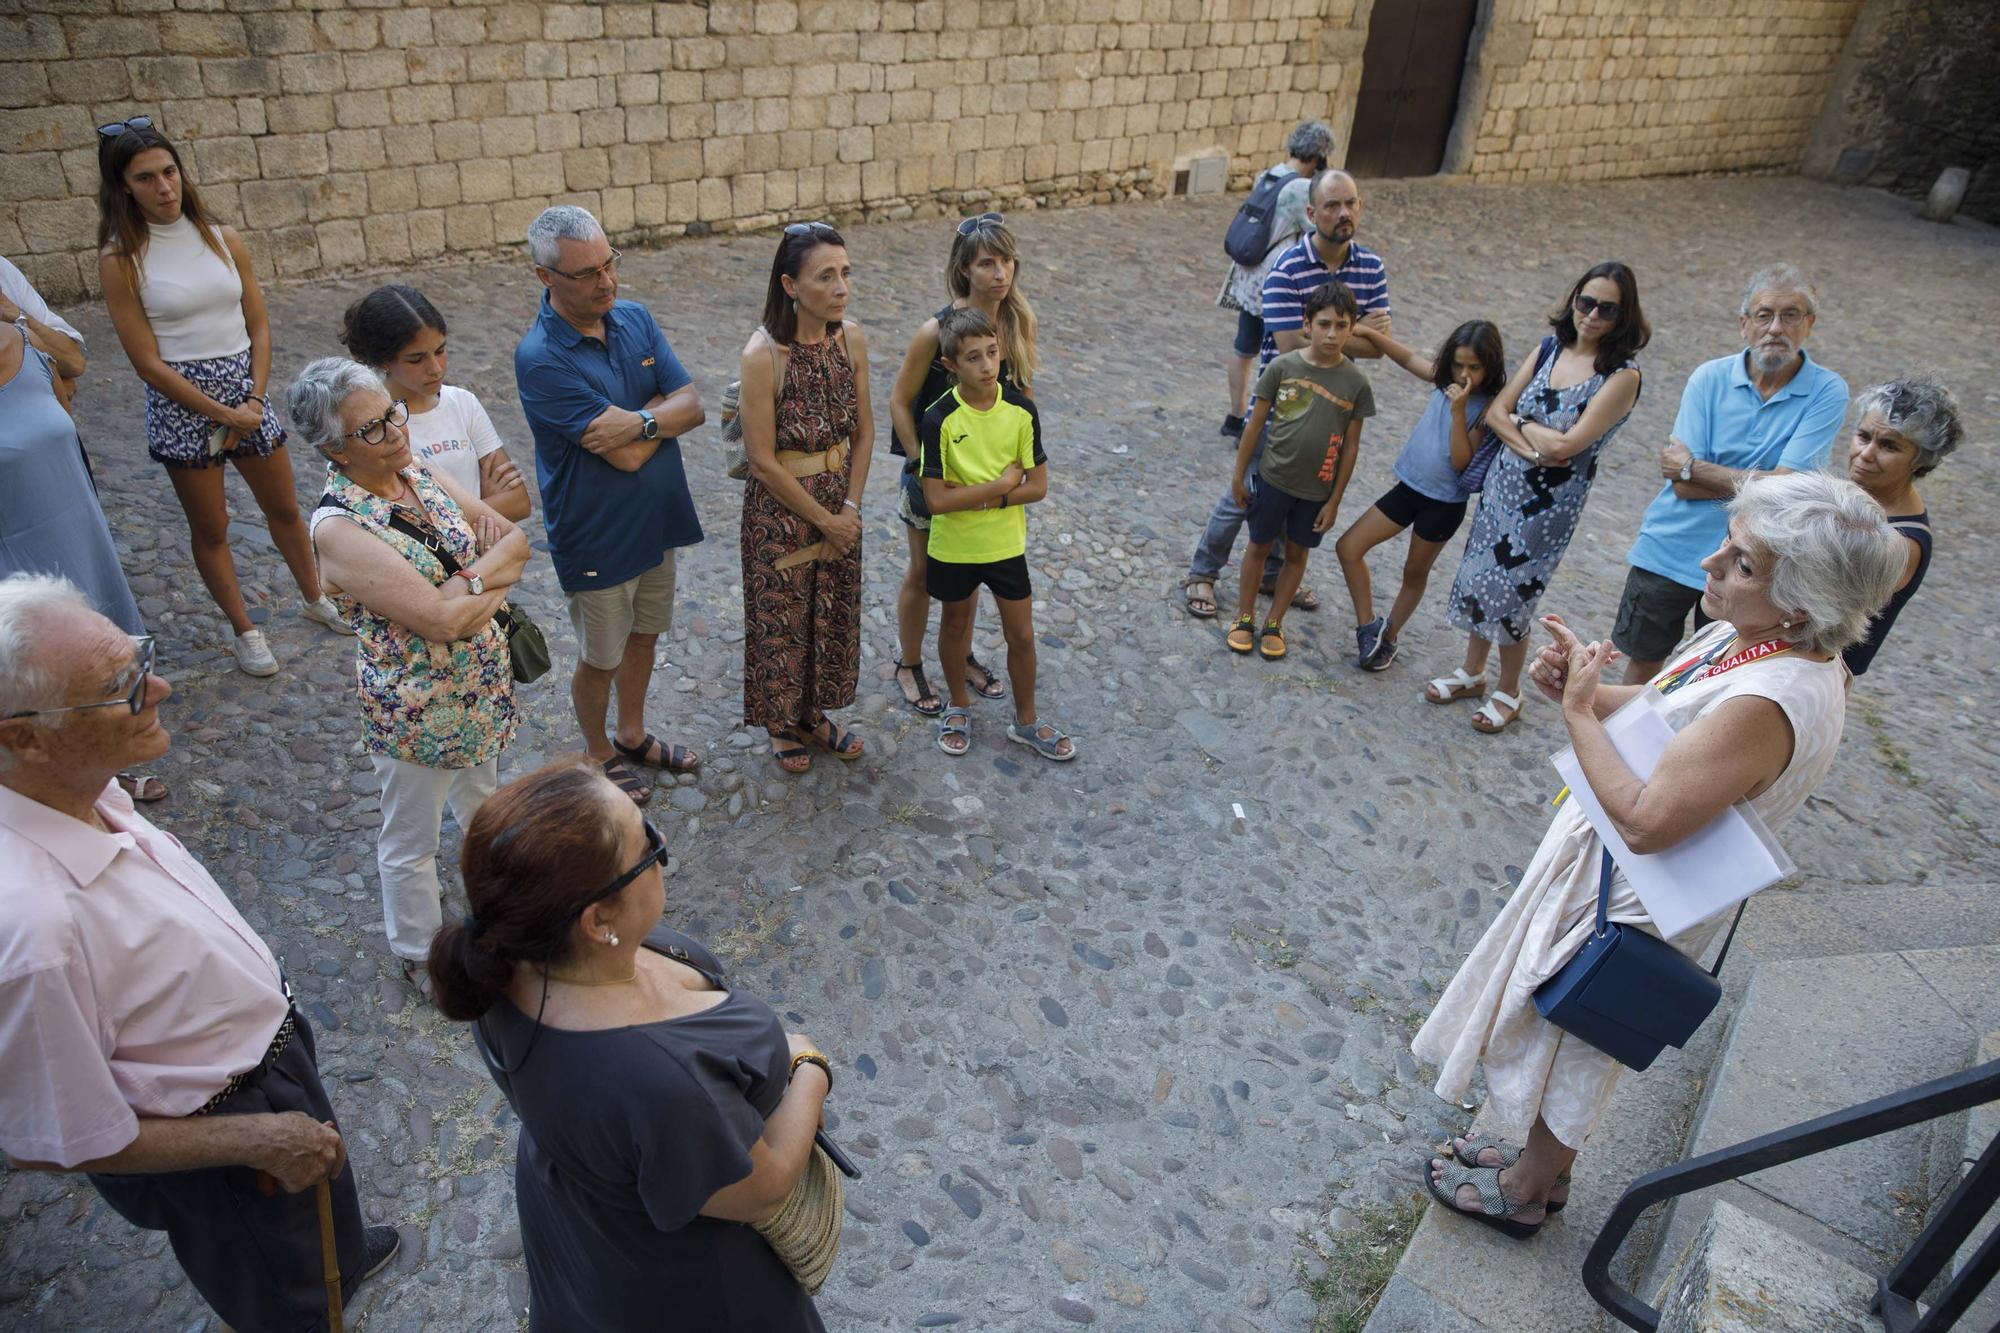 Visita guiada gratuïta pel call jueu per als residents a Girona